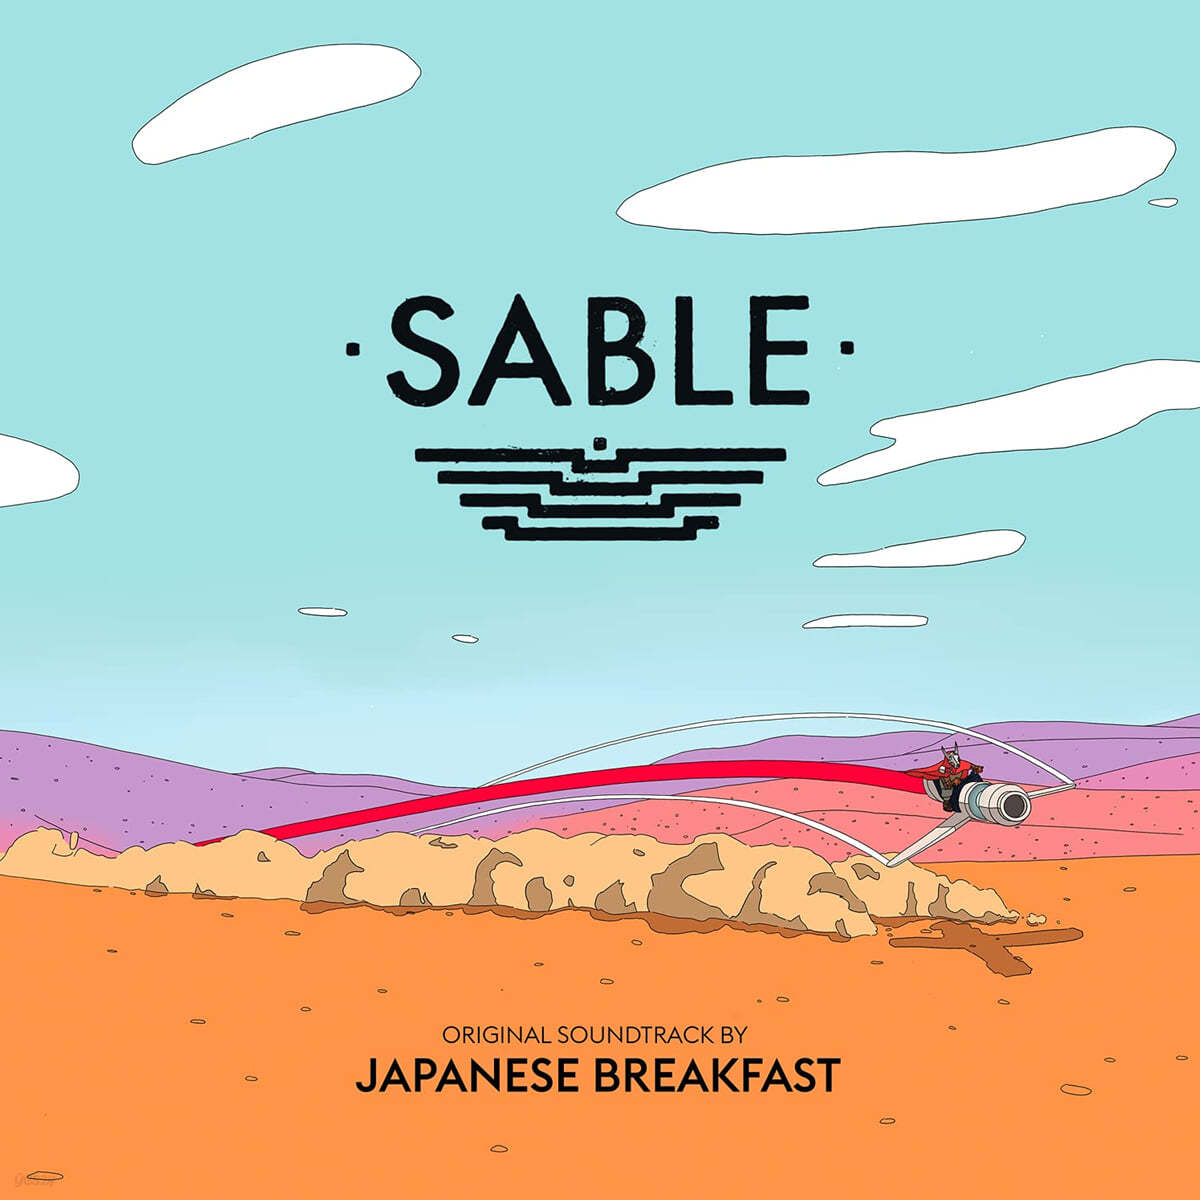 사블 비디오 게임 음악 (Sable OST by Japanese Breakfast) 